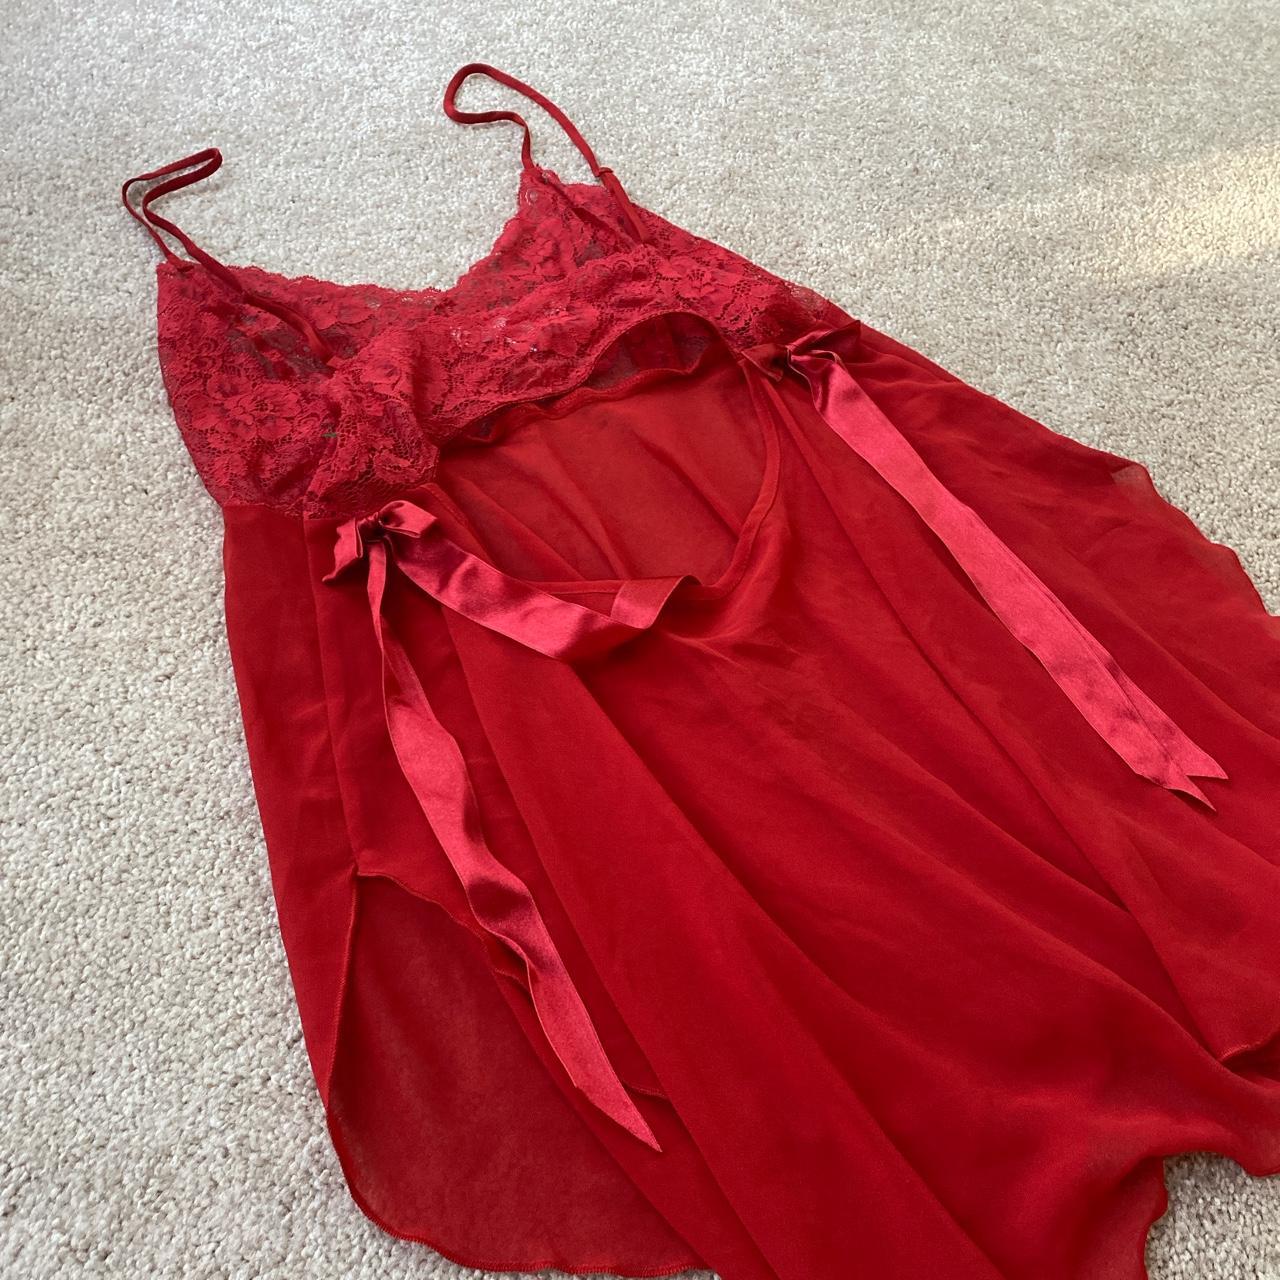 Victoria's Secret Women's Red Nightwear | Depop